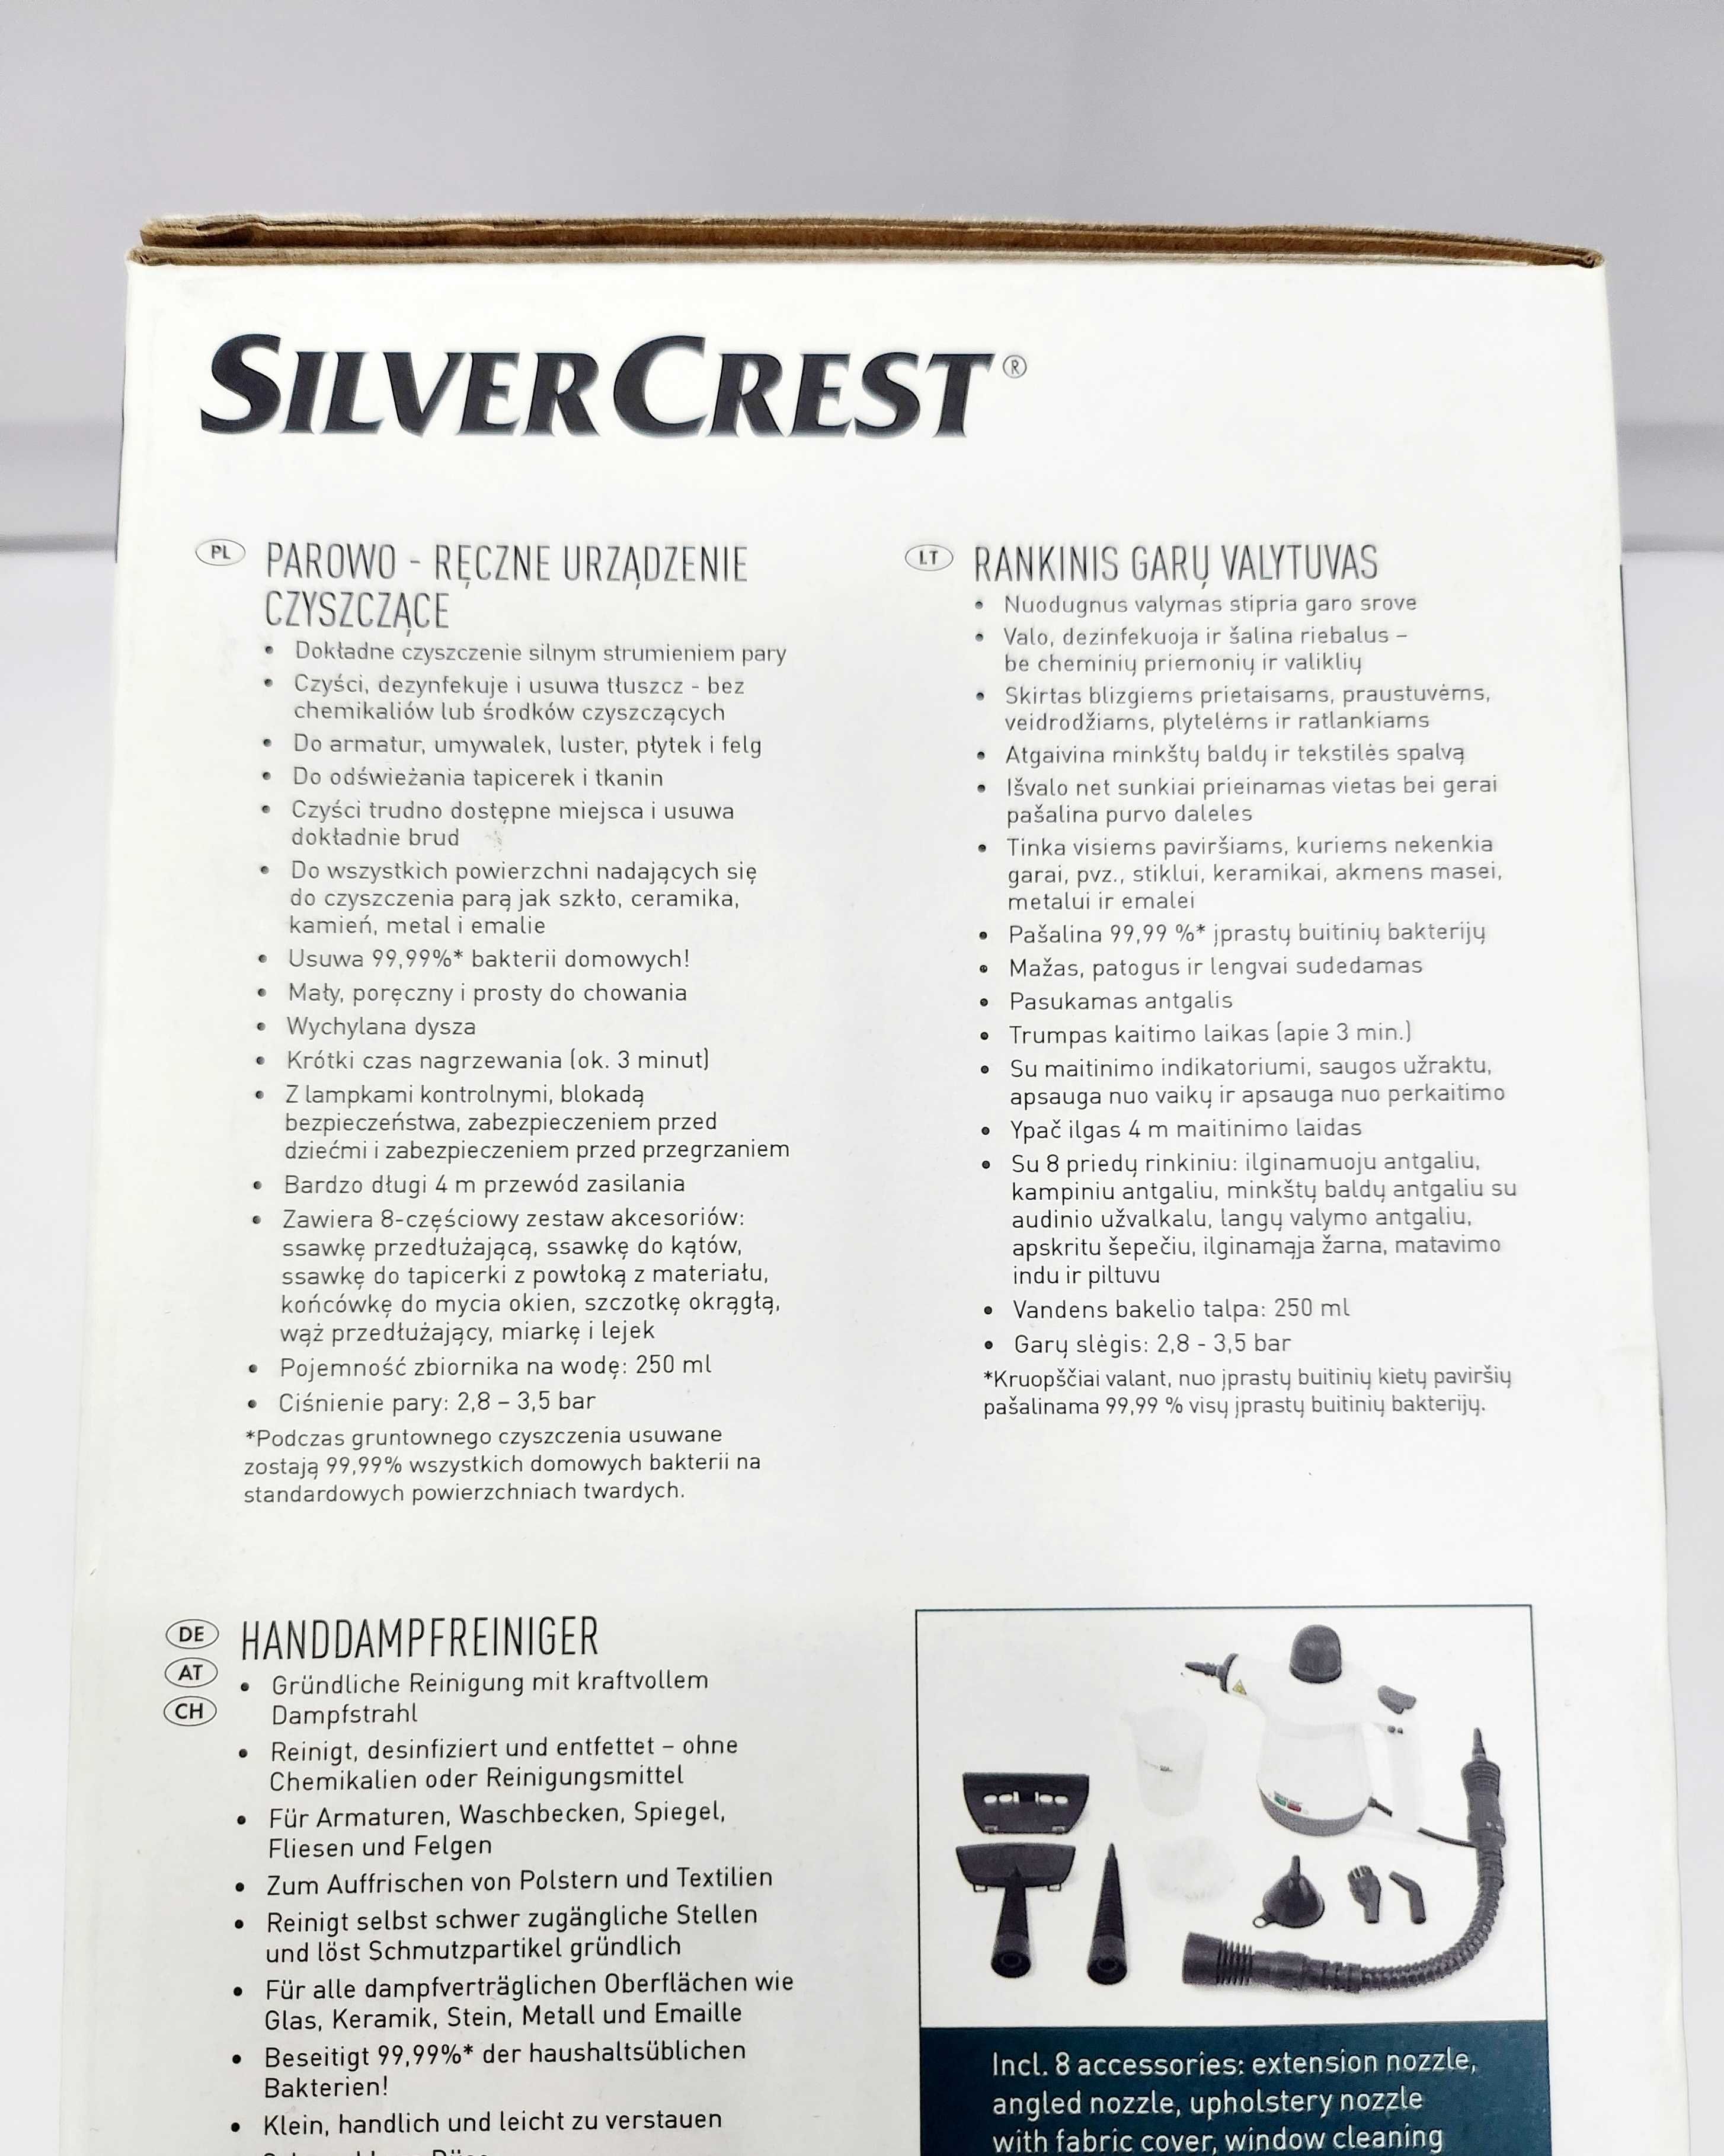 Parowo-Ręczne Urządzenie Czyszczące Silver Crest